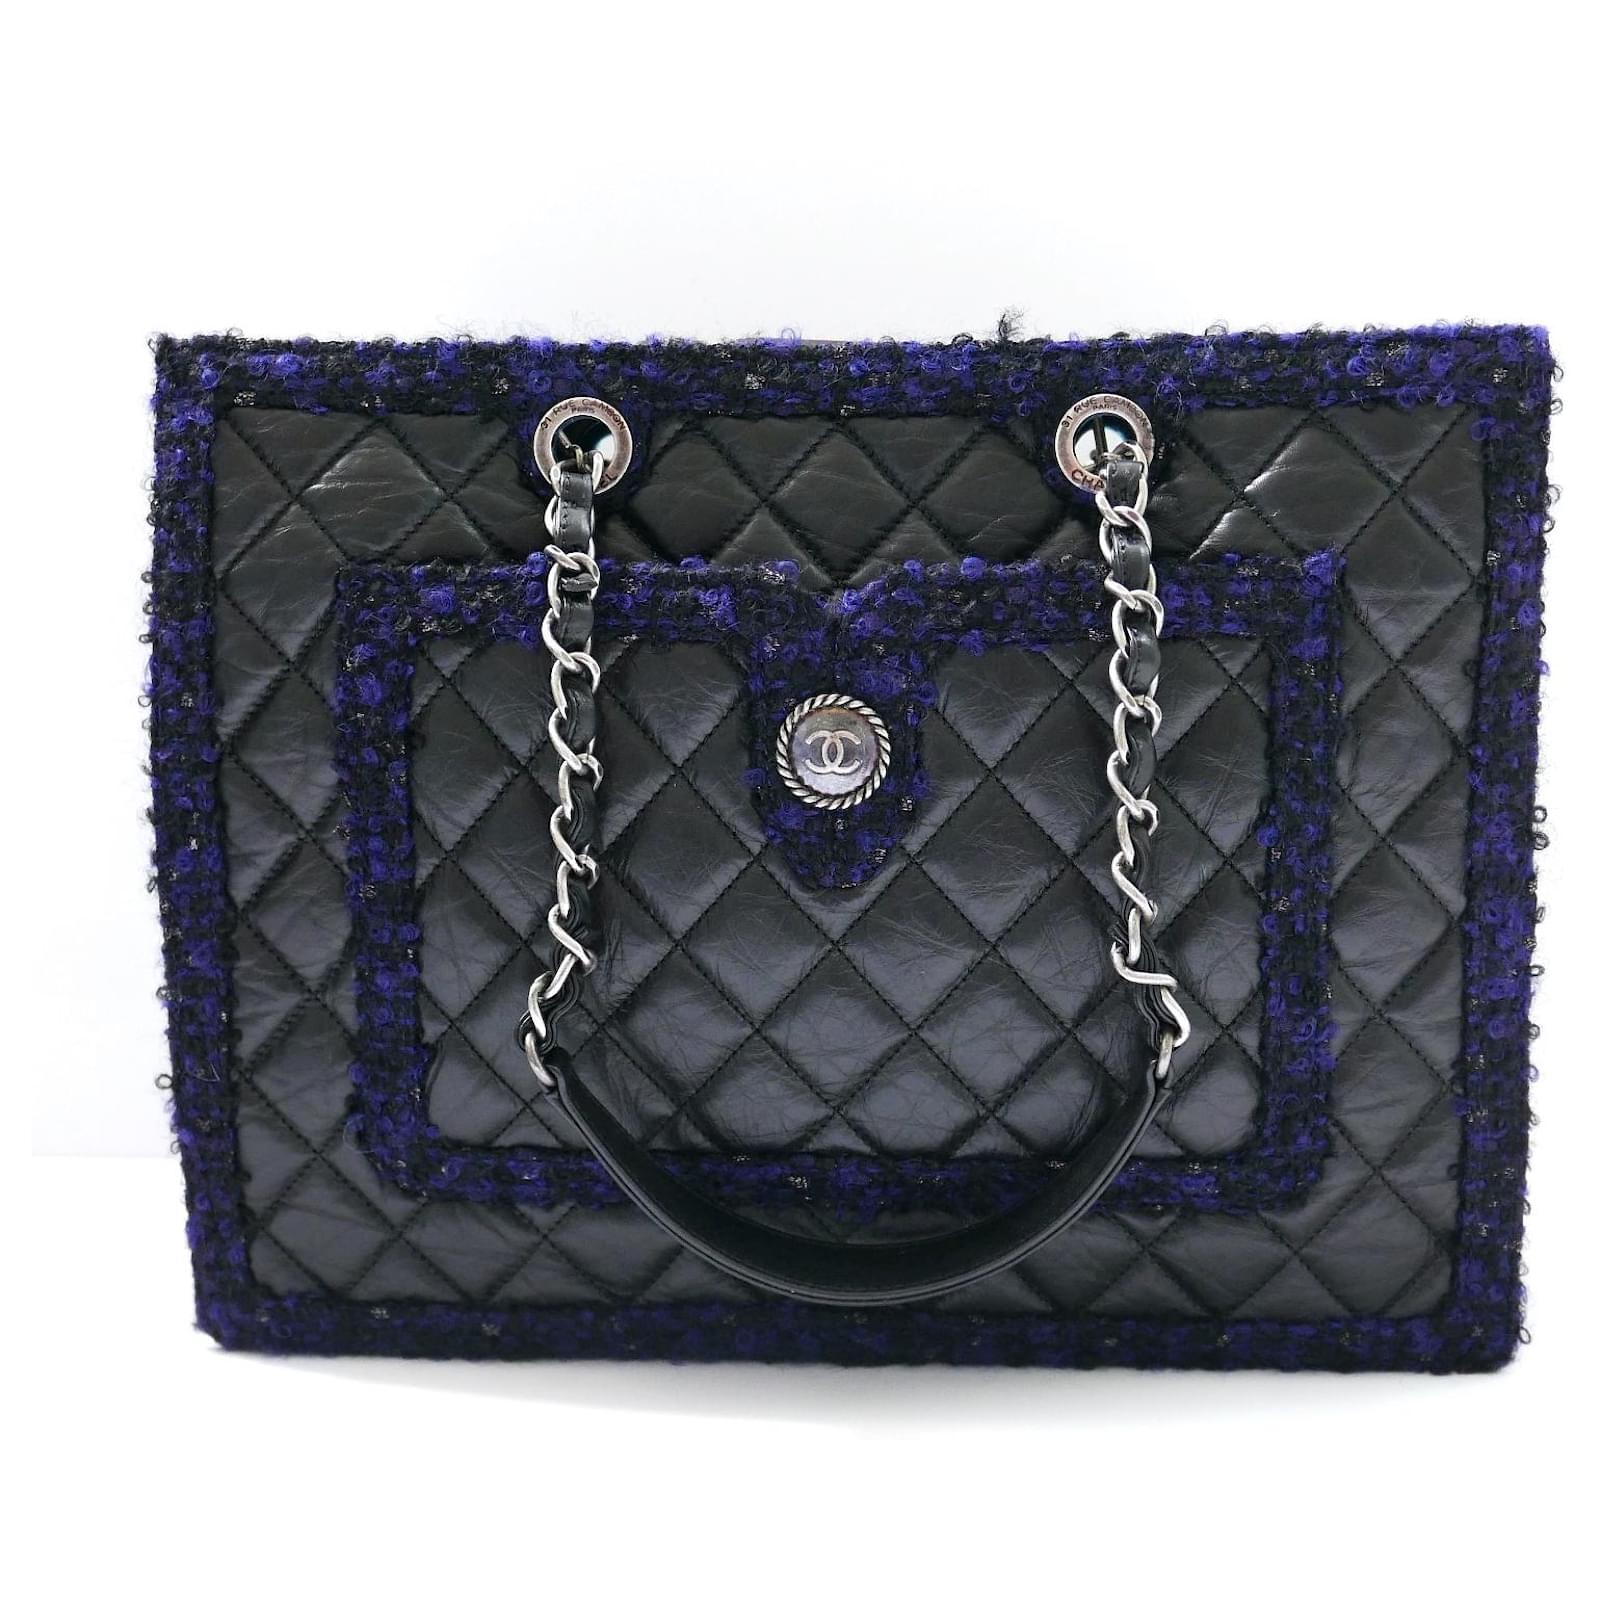 Chanel Deauville Handbag 402200, Reebok Pride flight bag